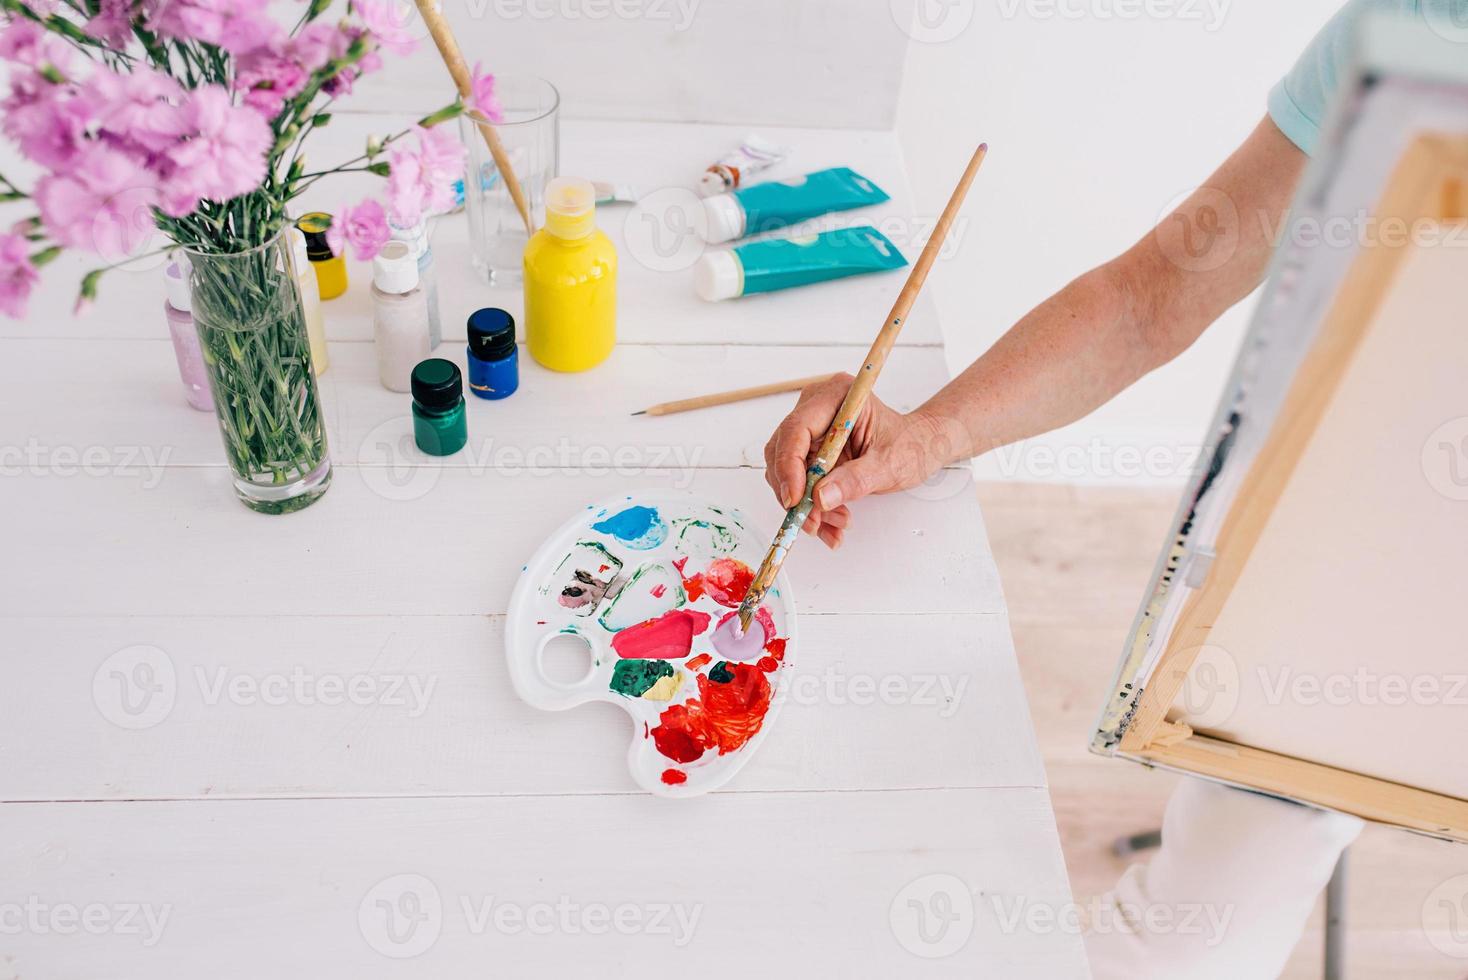 artista sênior de mulher alegre em copos com cabelos grisalhos, pintura de flores em um vaso. criatividade, arte, hobby, conceito de ocupação foto